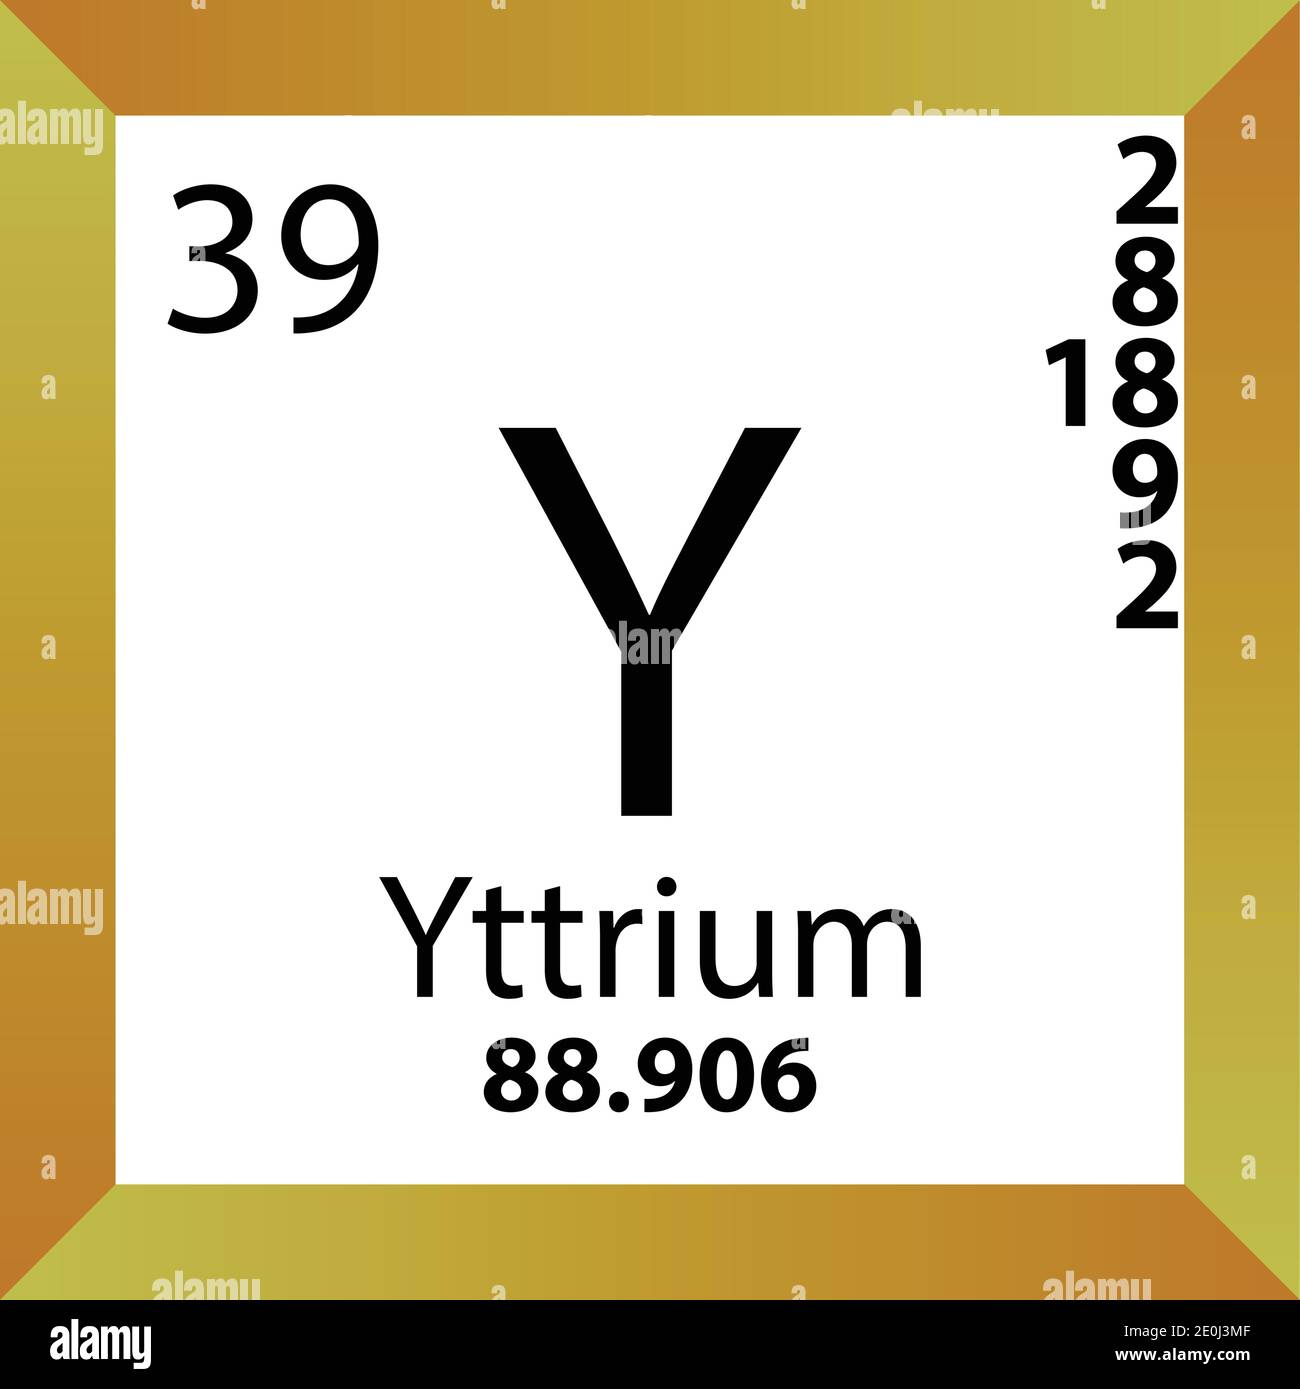 Y Yttrium Periodensystem für chemische Elemente. Einzelvektordarstellung, buntes Symbol mit Molmasse, Elektronenkonf. Und Ordnungszahl. Stock Vektor